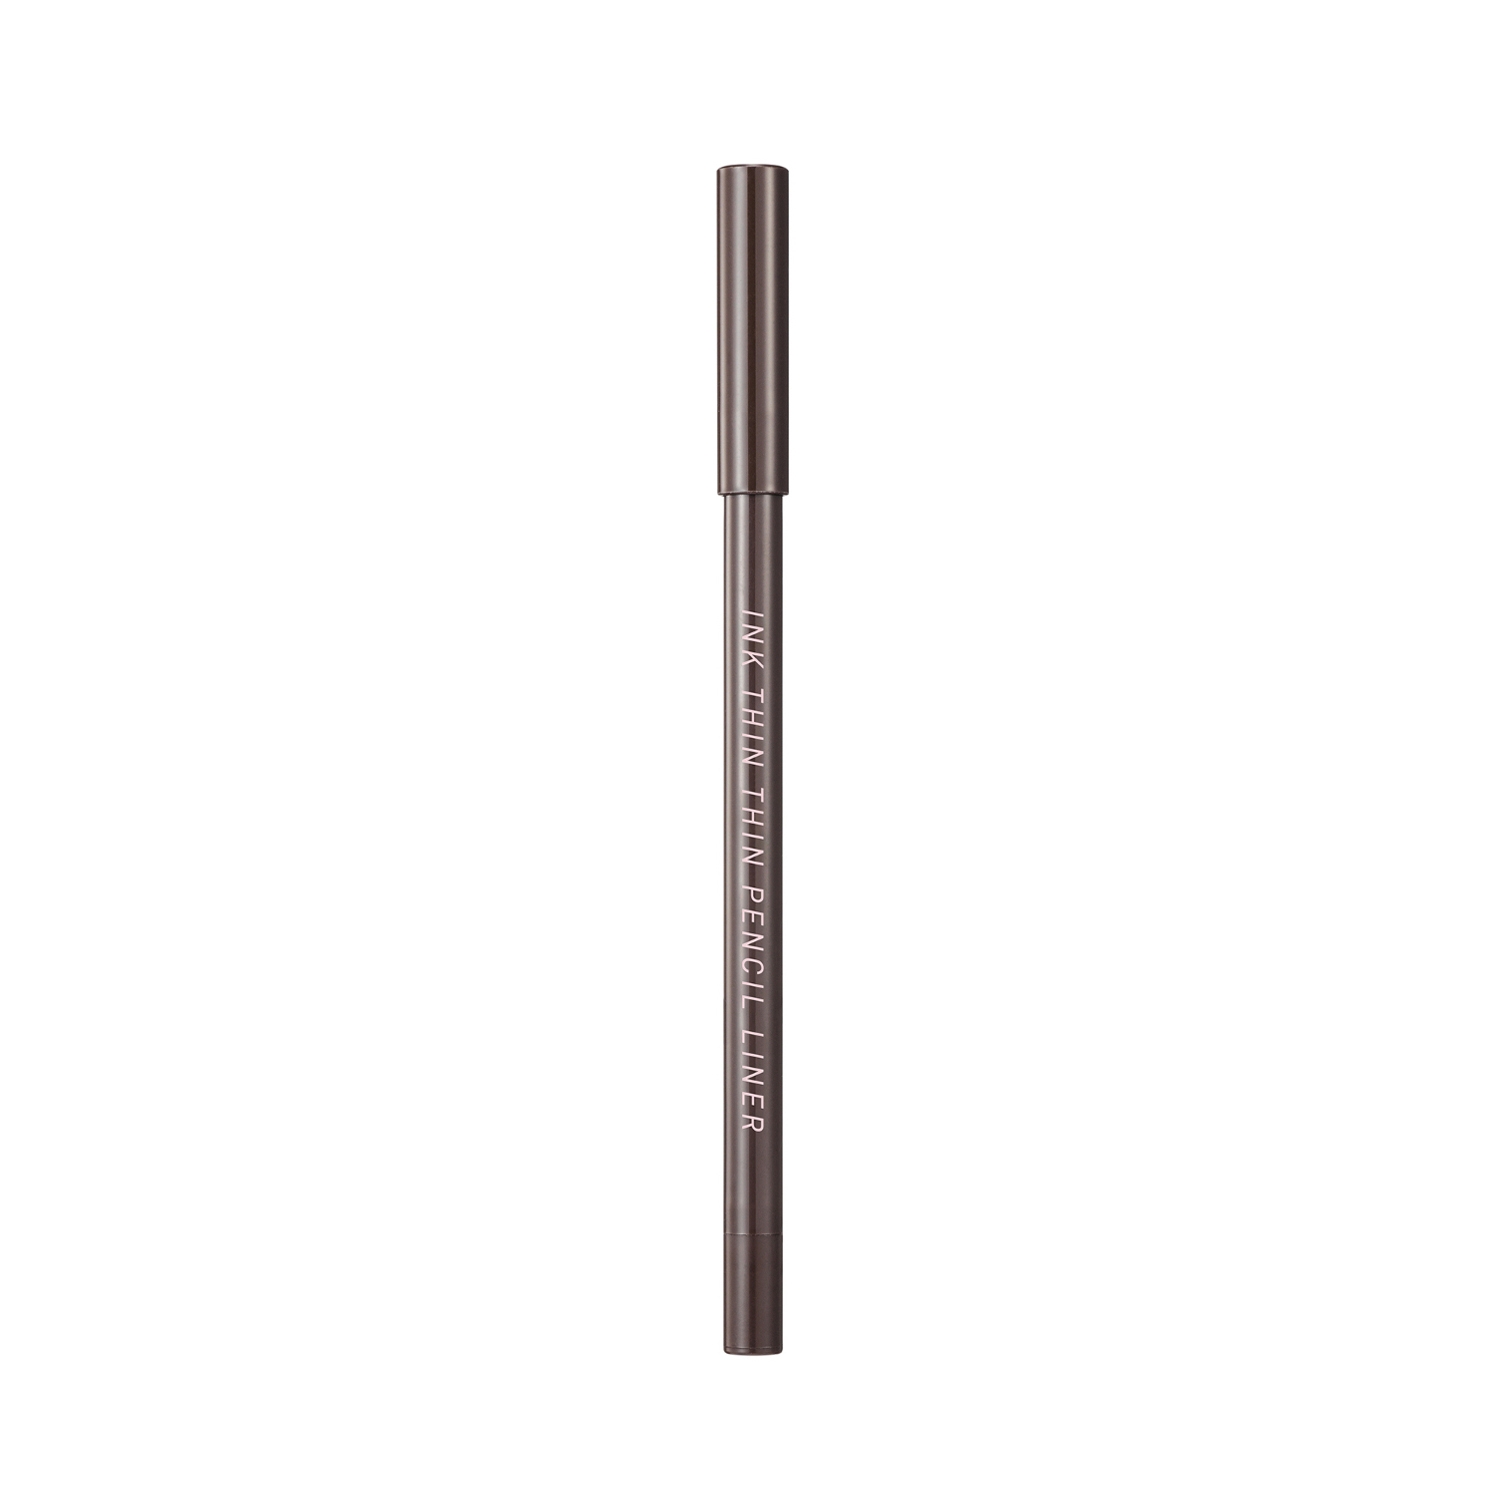 Peripera | Peripera Ink Thin Thin Pencil Eyeliner - 02 Cacao Brown (0.13g)